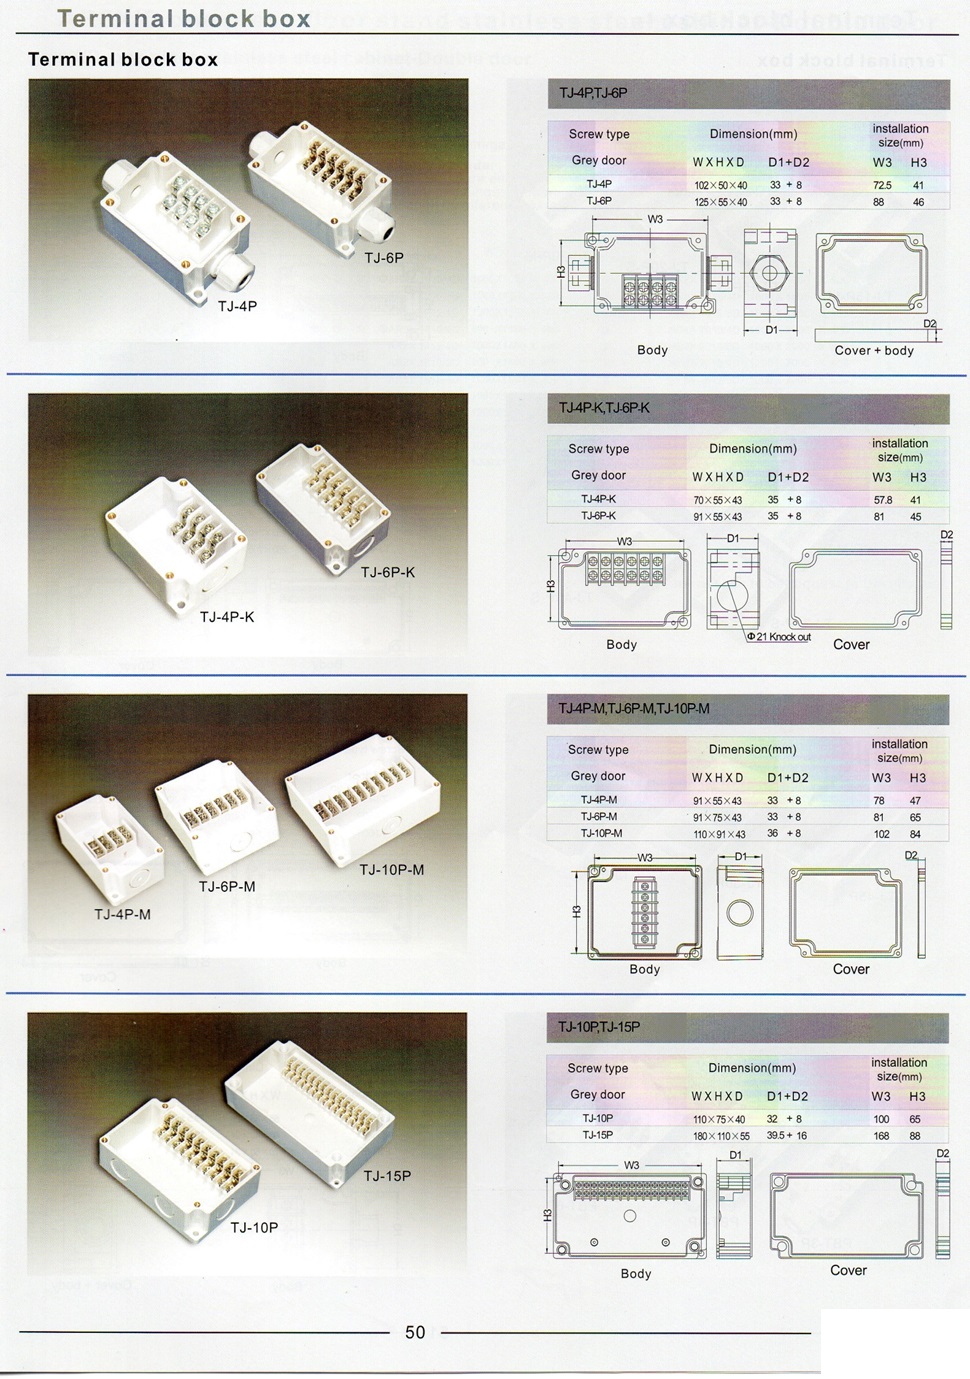 IP 66-67 terminal box,กล่องเดินสายไฟ, กล่องต่อสายไฟ, terminal block box, boxco, Fibox, Hi-box, กล่องต่อสายไฟพลาสติกกันน้ำ, กล่องต่อสายไฟ4เส้น